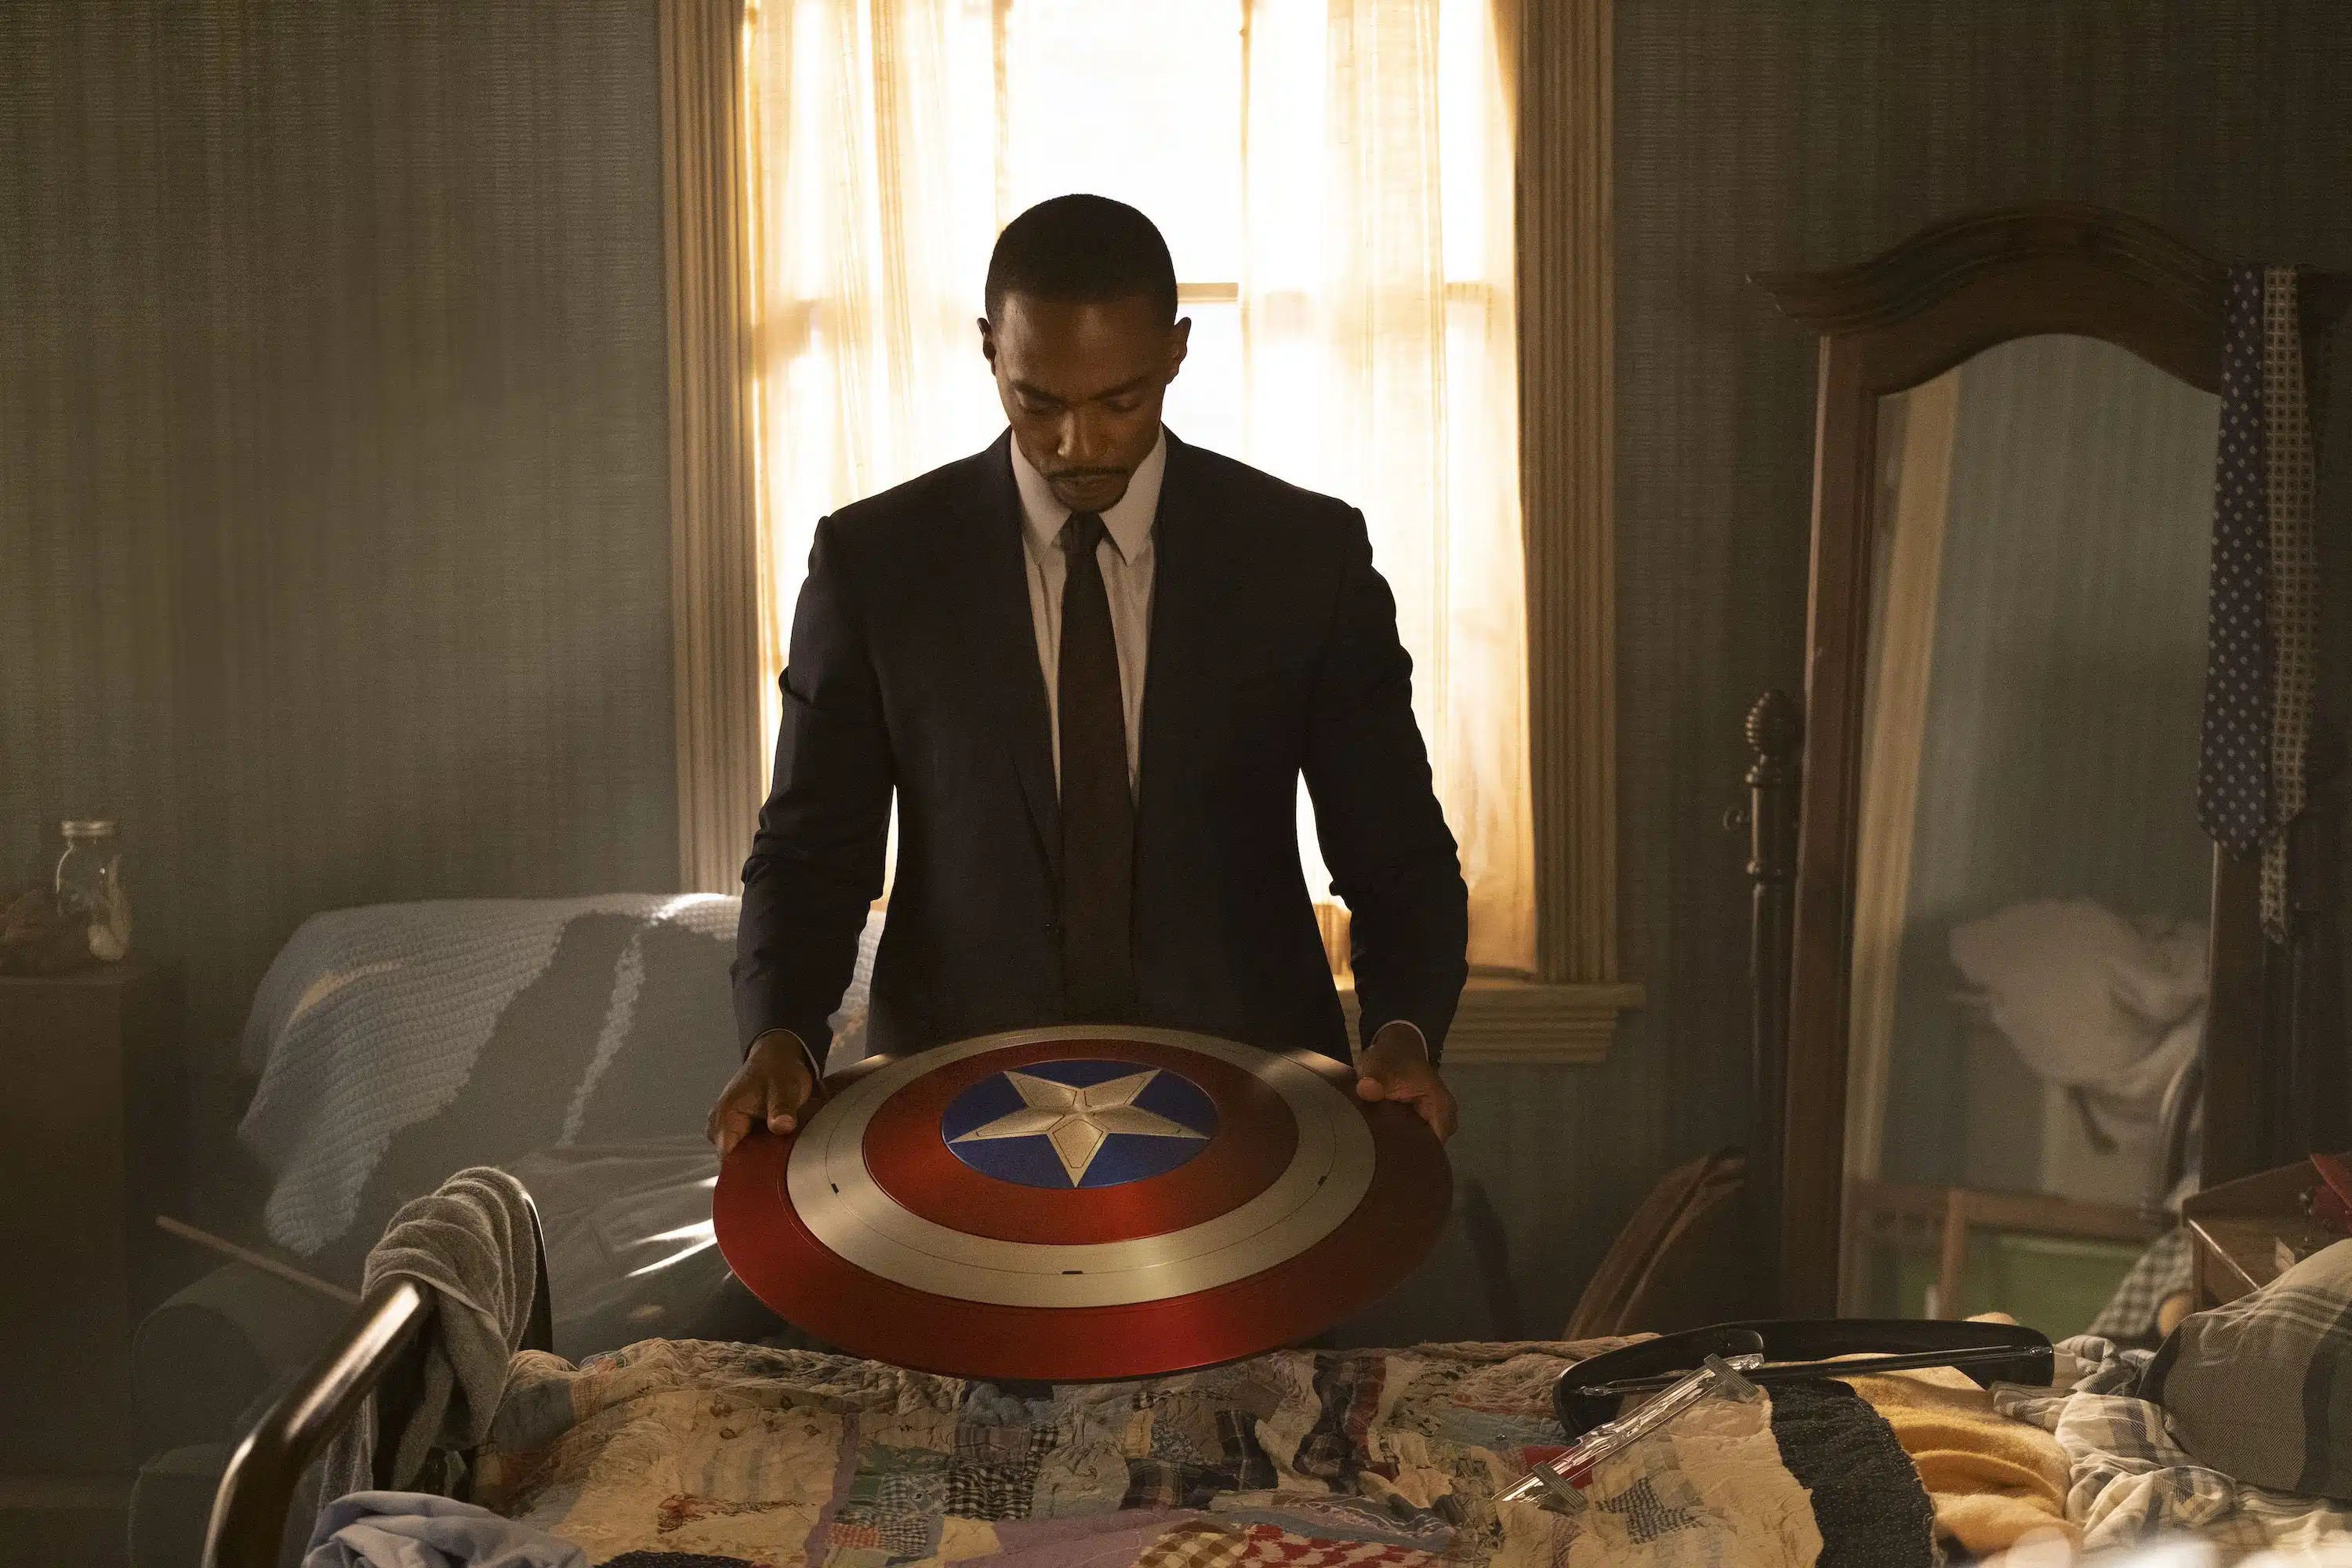 La cuarta película de Capitán América termina su rodaje, según lo revelado el director de fotografía